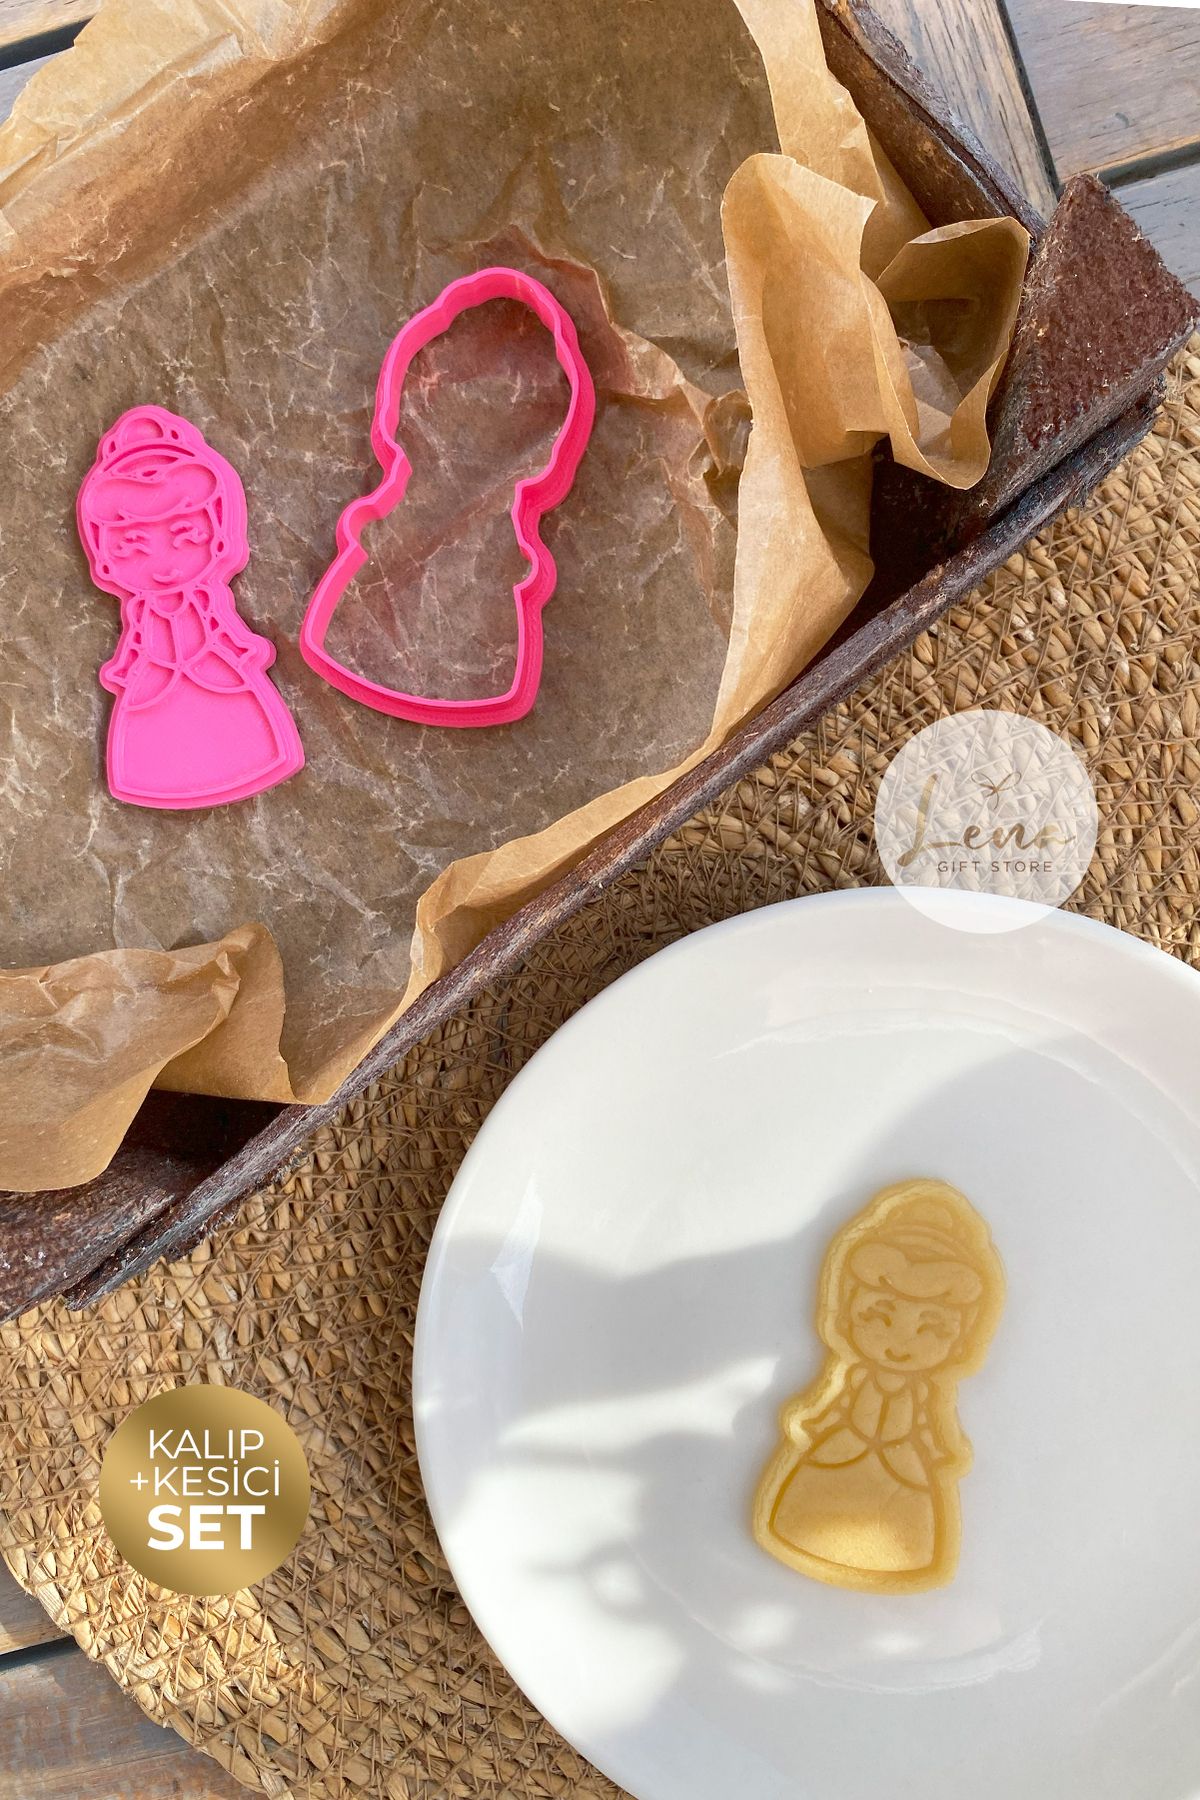 Lena Gift Store Disney Prenses Cindirella Temalı Kurabiye Kek Şeker Kurabiye Kalıbı Ve Hamur Şekillendirici